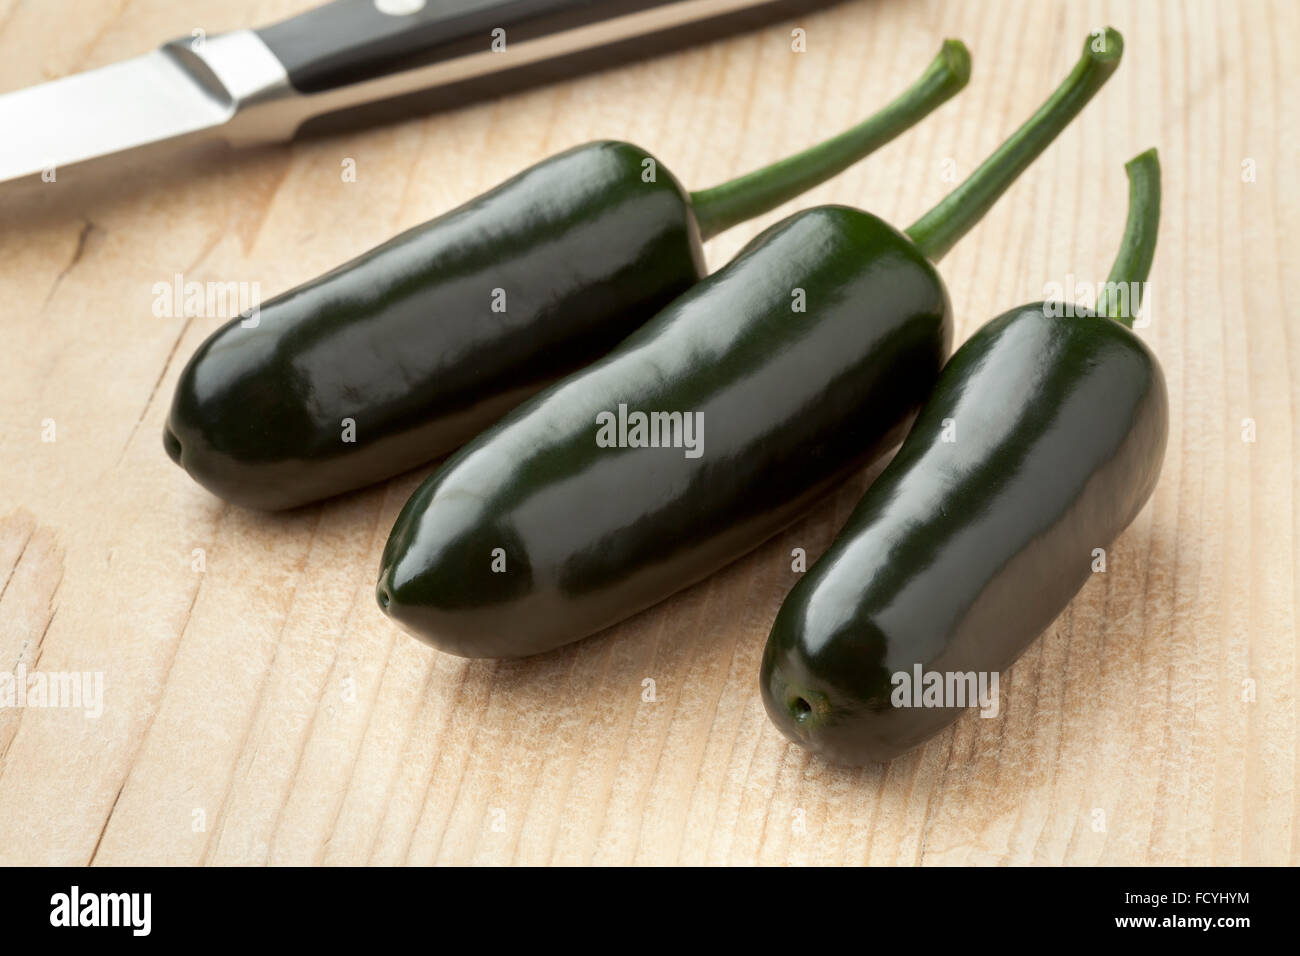 Tre verde fresco peperoncino jalapeno peppers su un tagliere Foto Stock